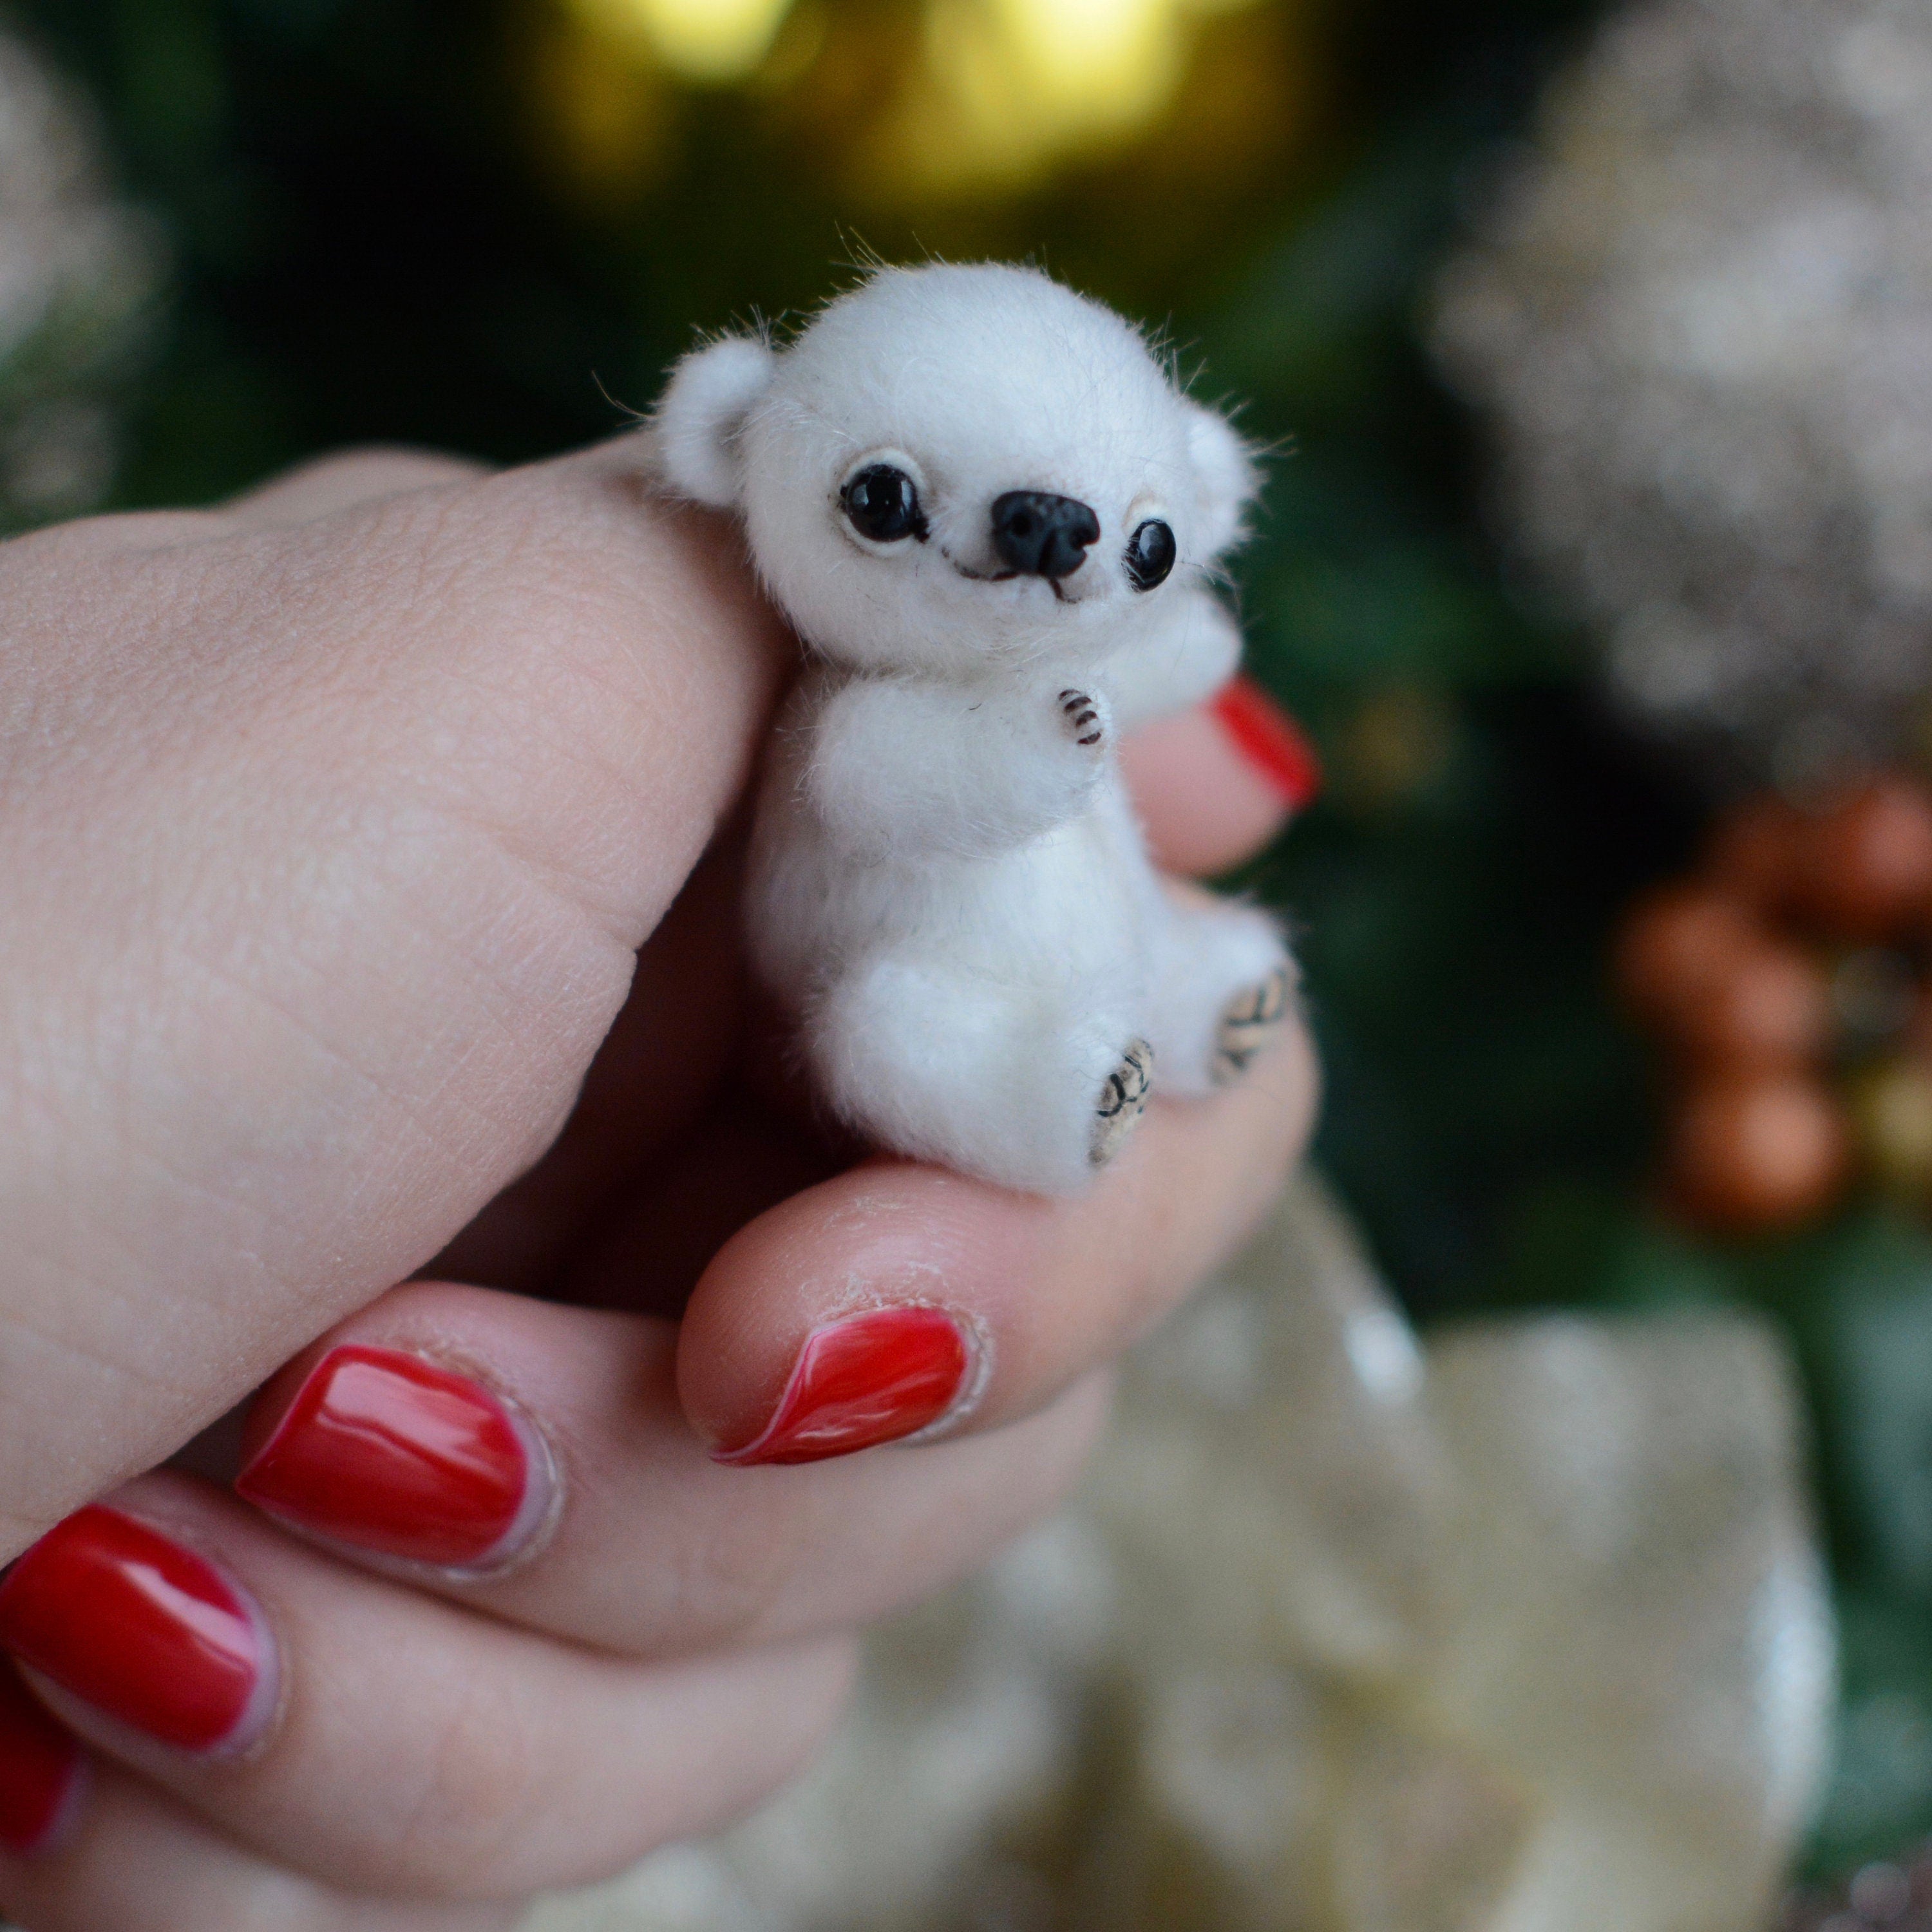 Sewing PATTERN PDF Micro white bear, by Tatiana Scalozub, how to make teddy mini teddy bear step by step, diy polar teddy bear